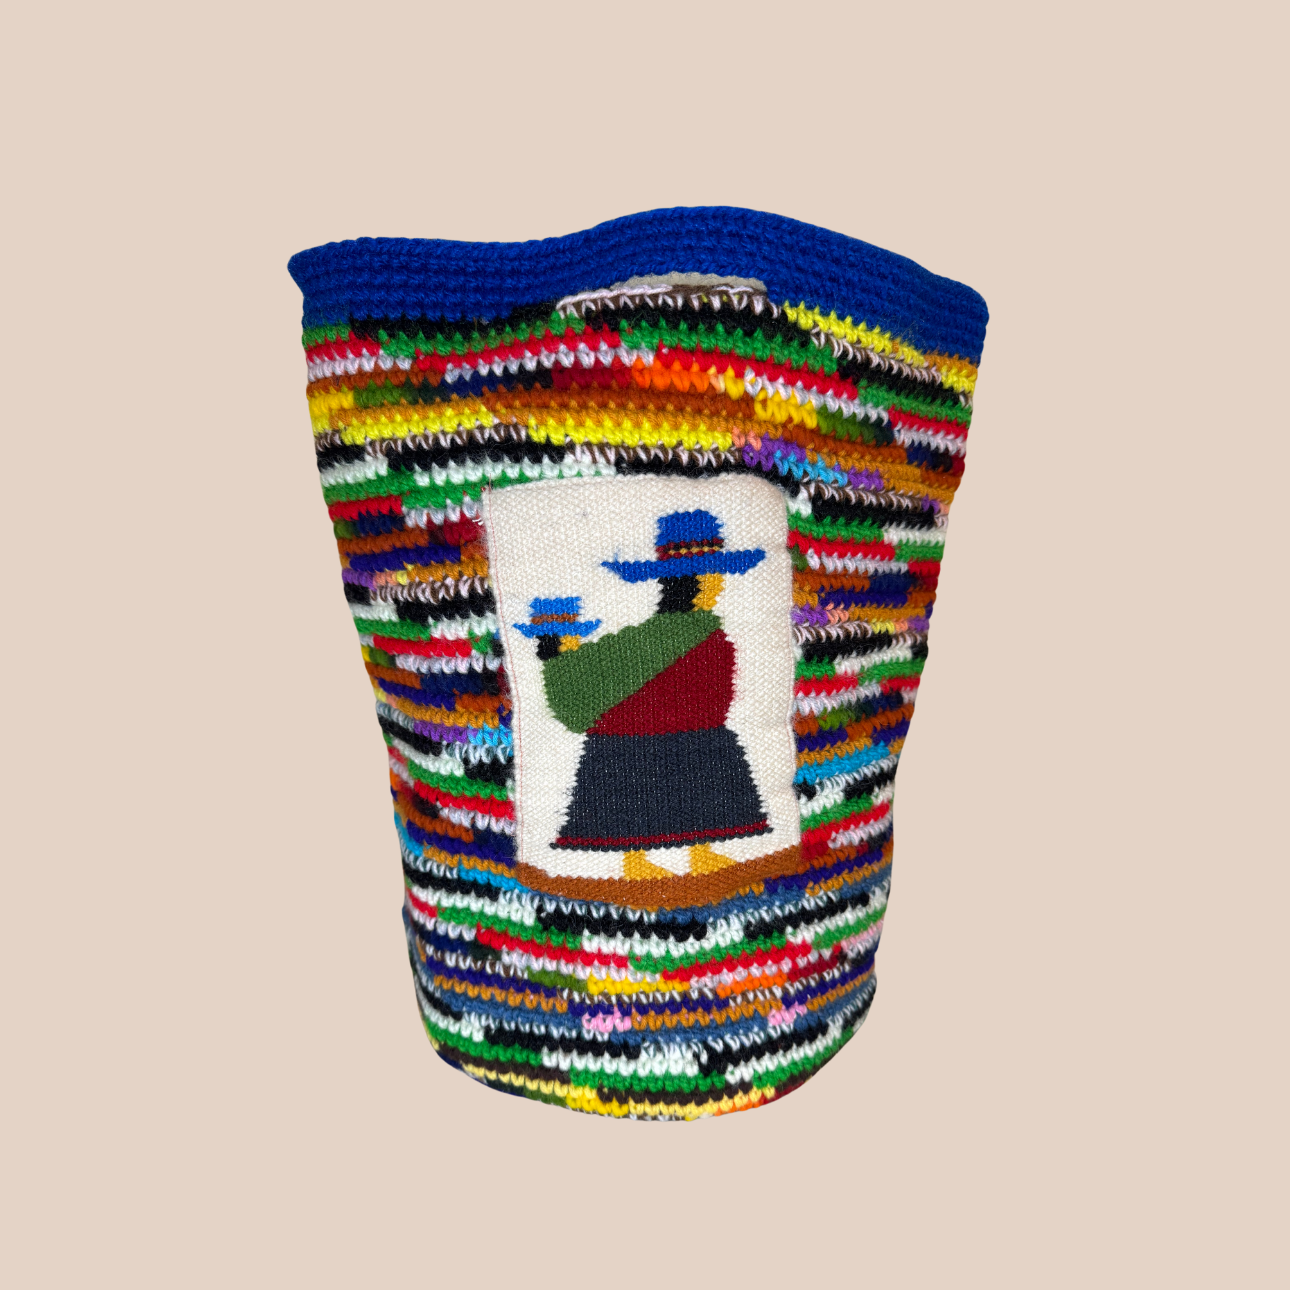 Image du sac aux motifs poupées de Maison Badigo, sac XXL en laine crochetée arborant des couleurs vives et audacieuses